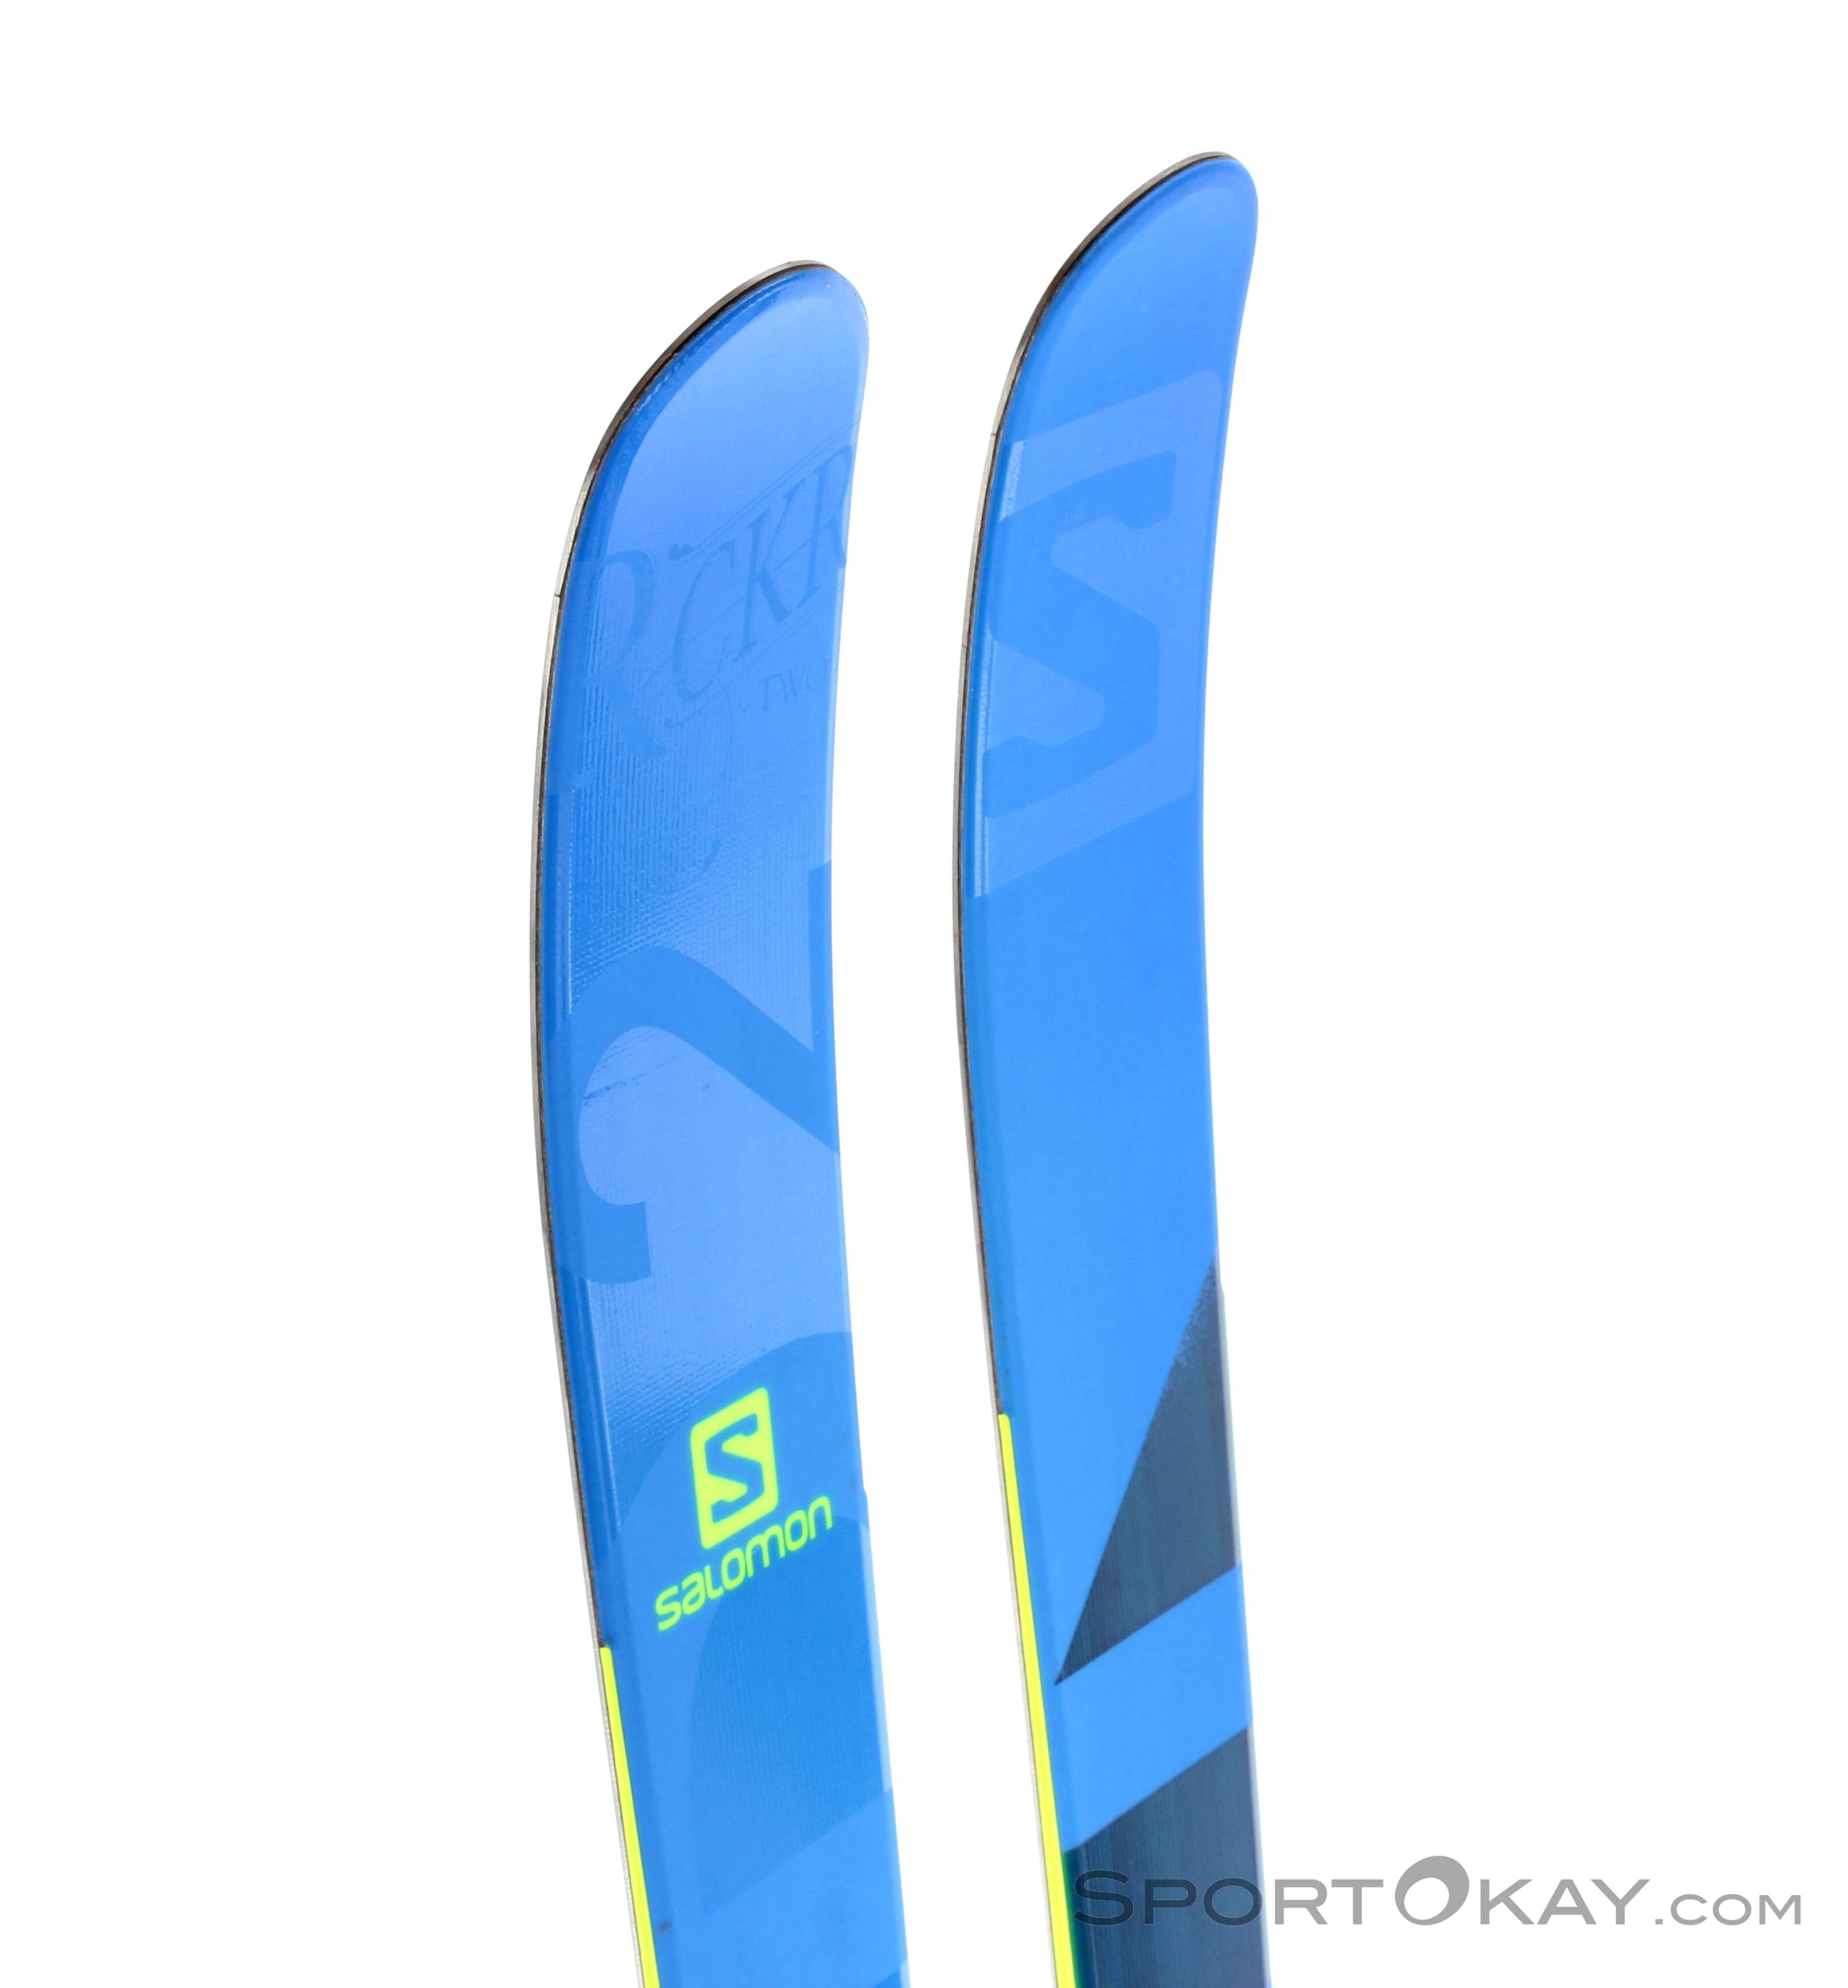 Salomon 2 100 naked Skis 2015 - Freeride Skis - Skis - Ski Freeride - All